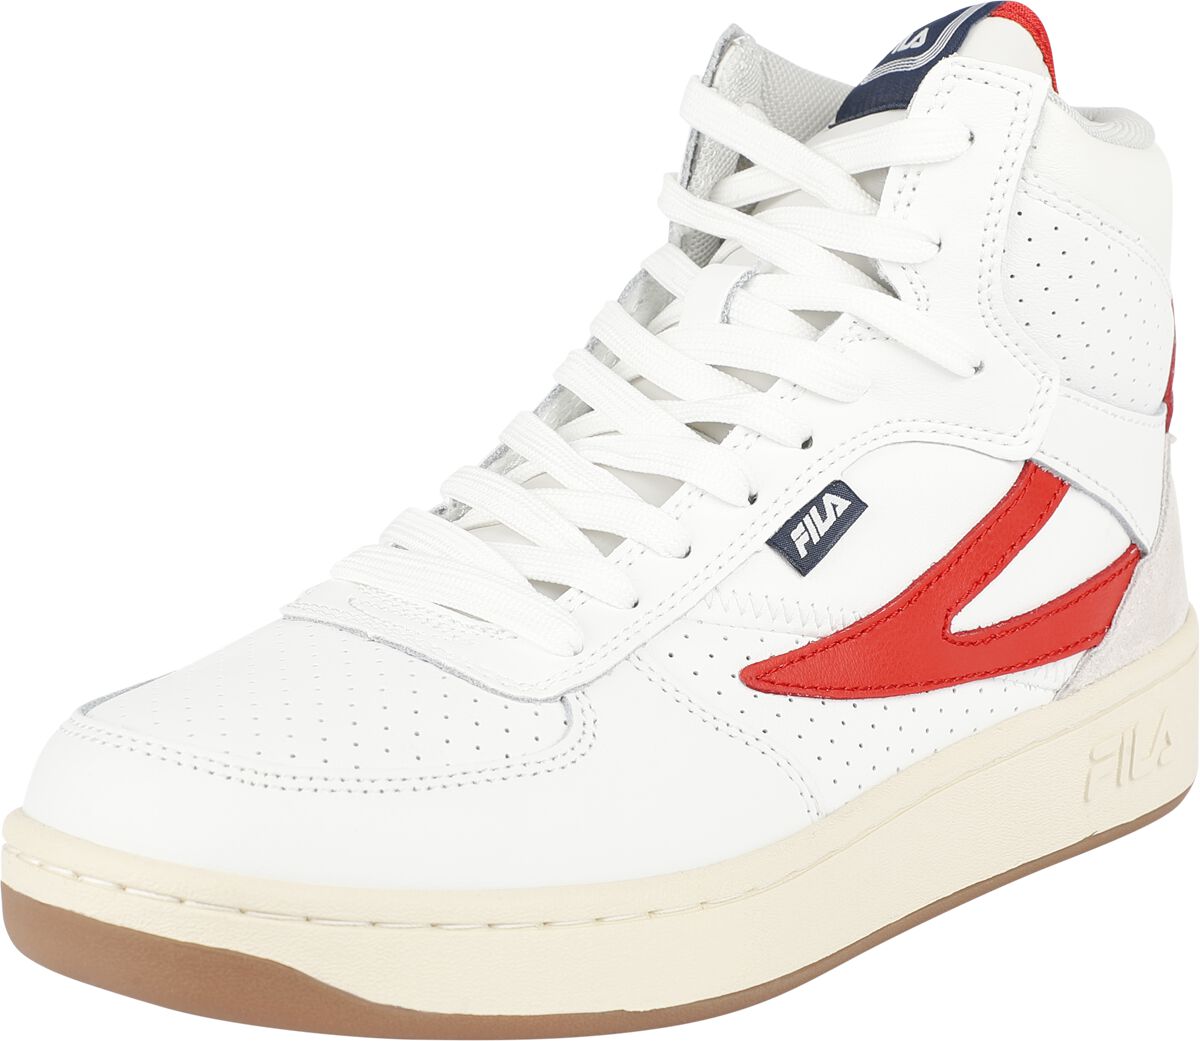 Fila FILA SEVARO mid wmn Sneaker high weiß rot in EU36